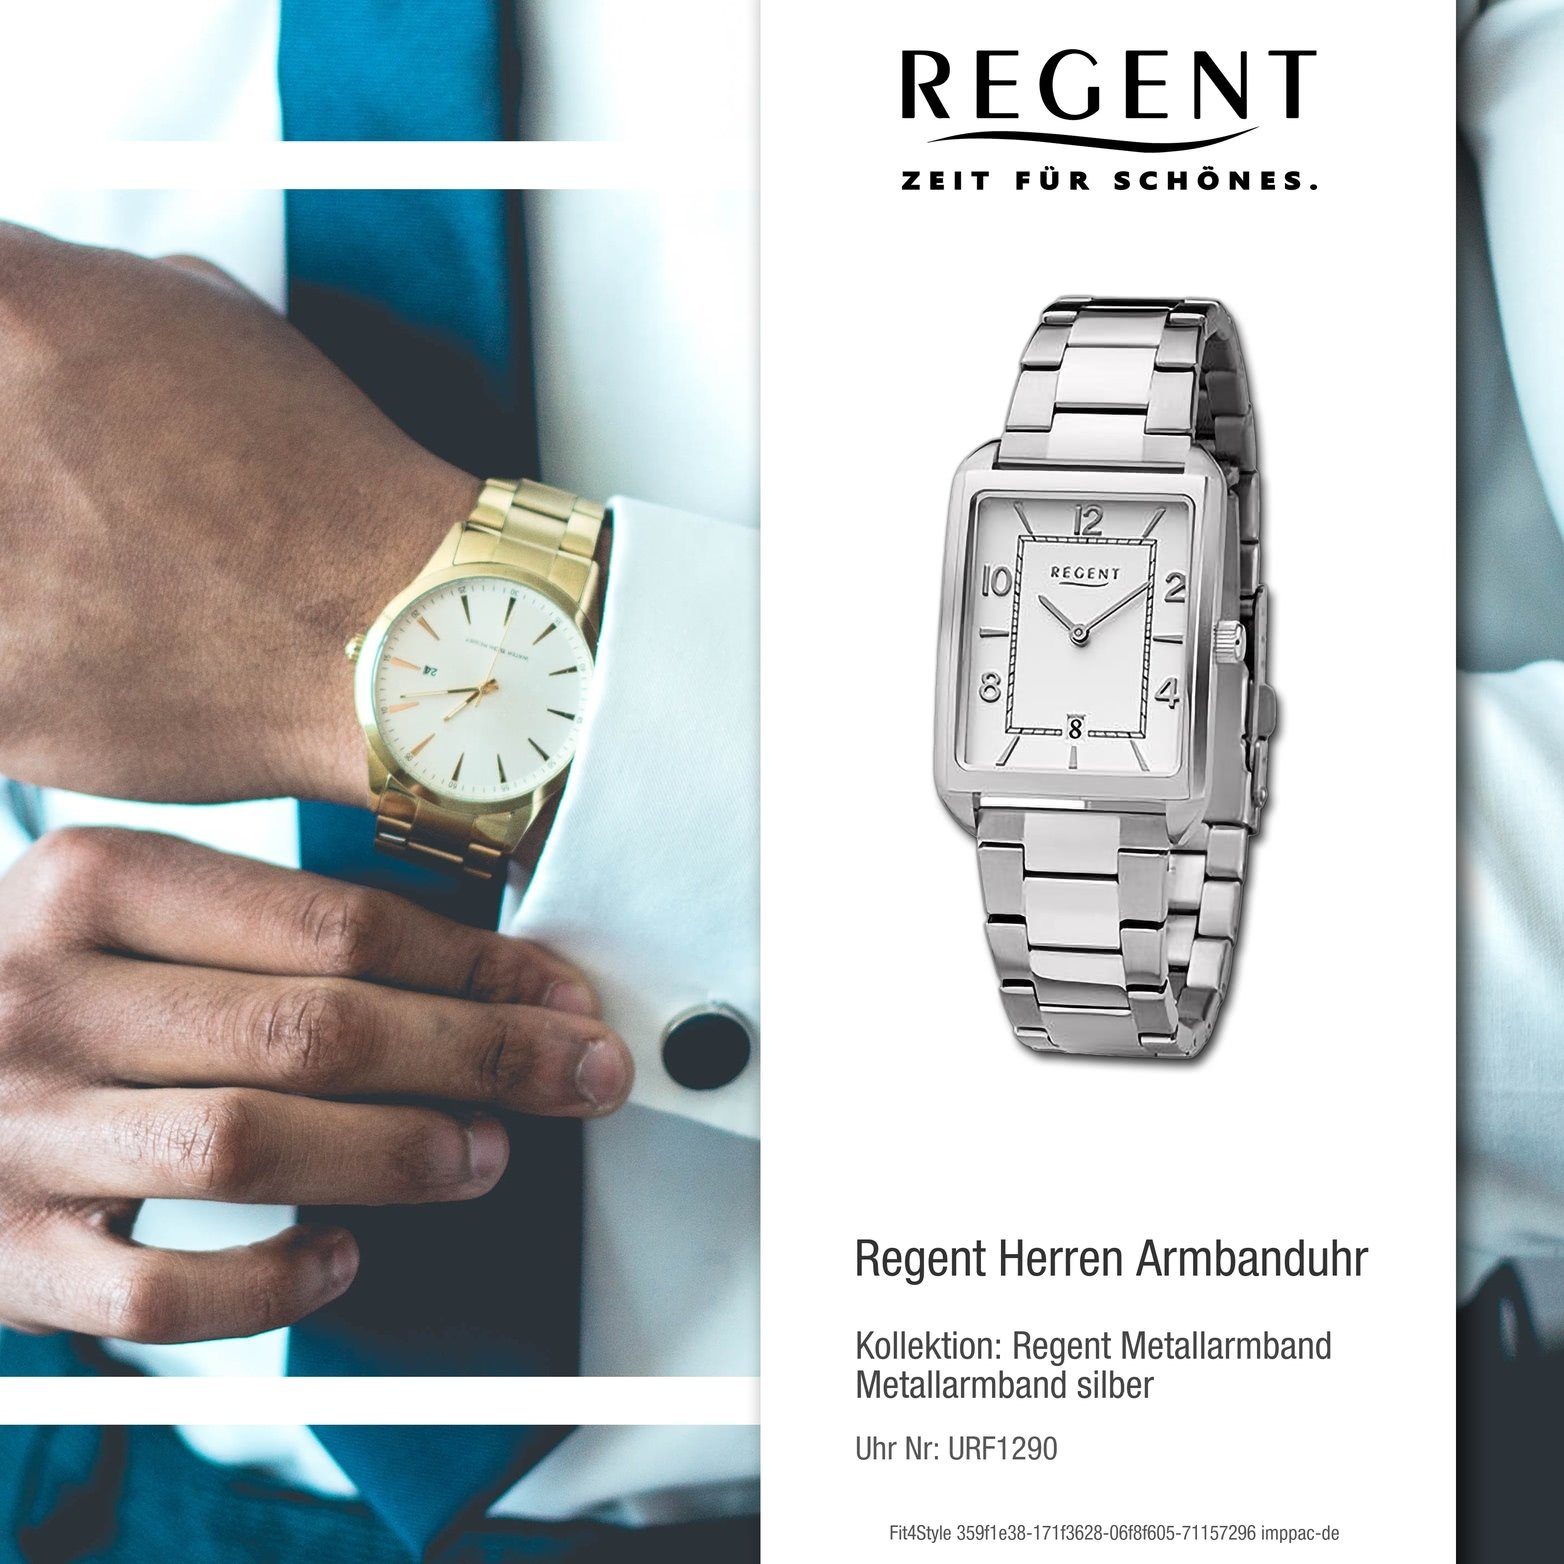 Regent Quarzuhr groß rundes Gehäuse, Analog, Metallarmband (ca. Armbanduhr Regent silber, 28,5x41,5mm) Herrenuhr Herren